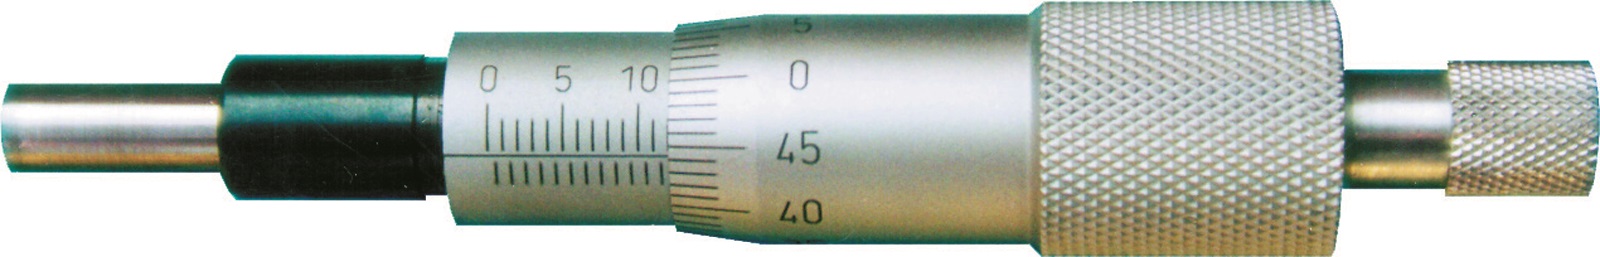 Einbau-Messschraube DIN 863 - 25 mm